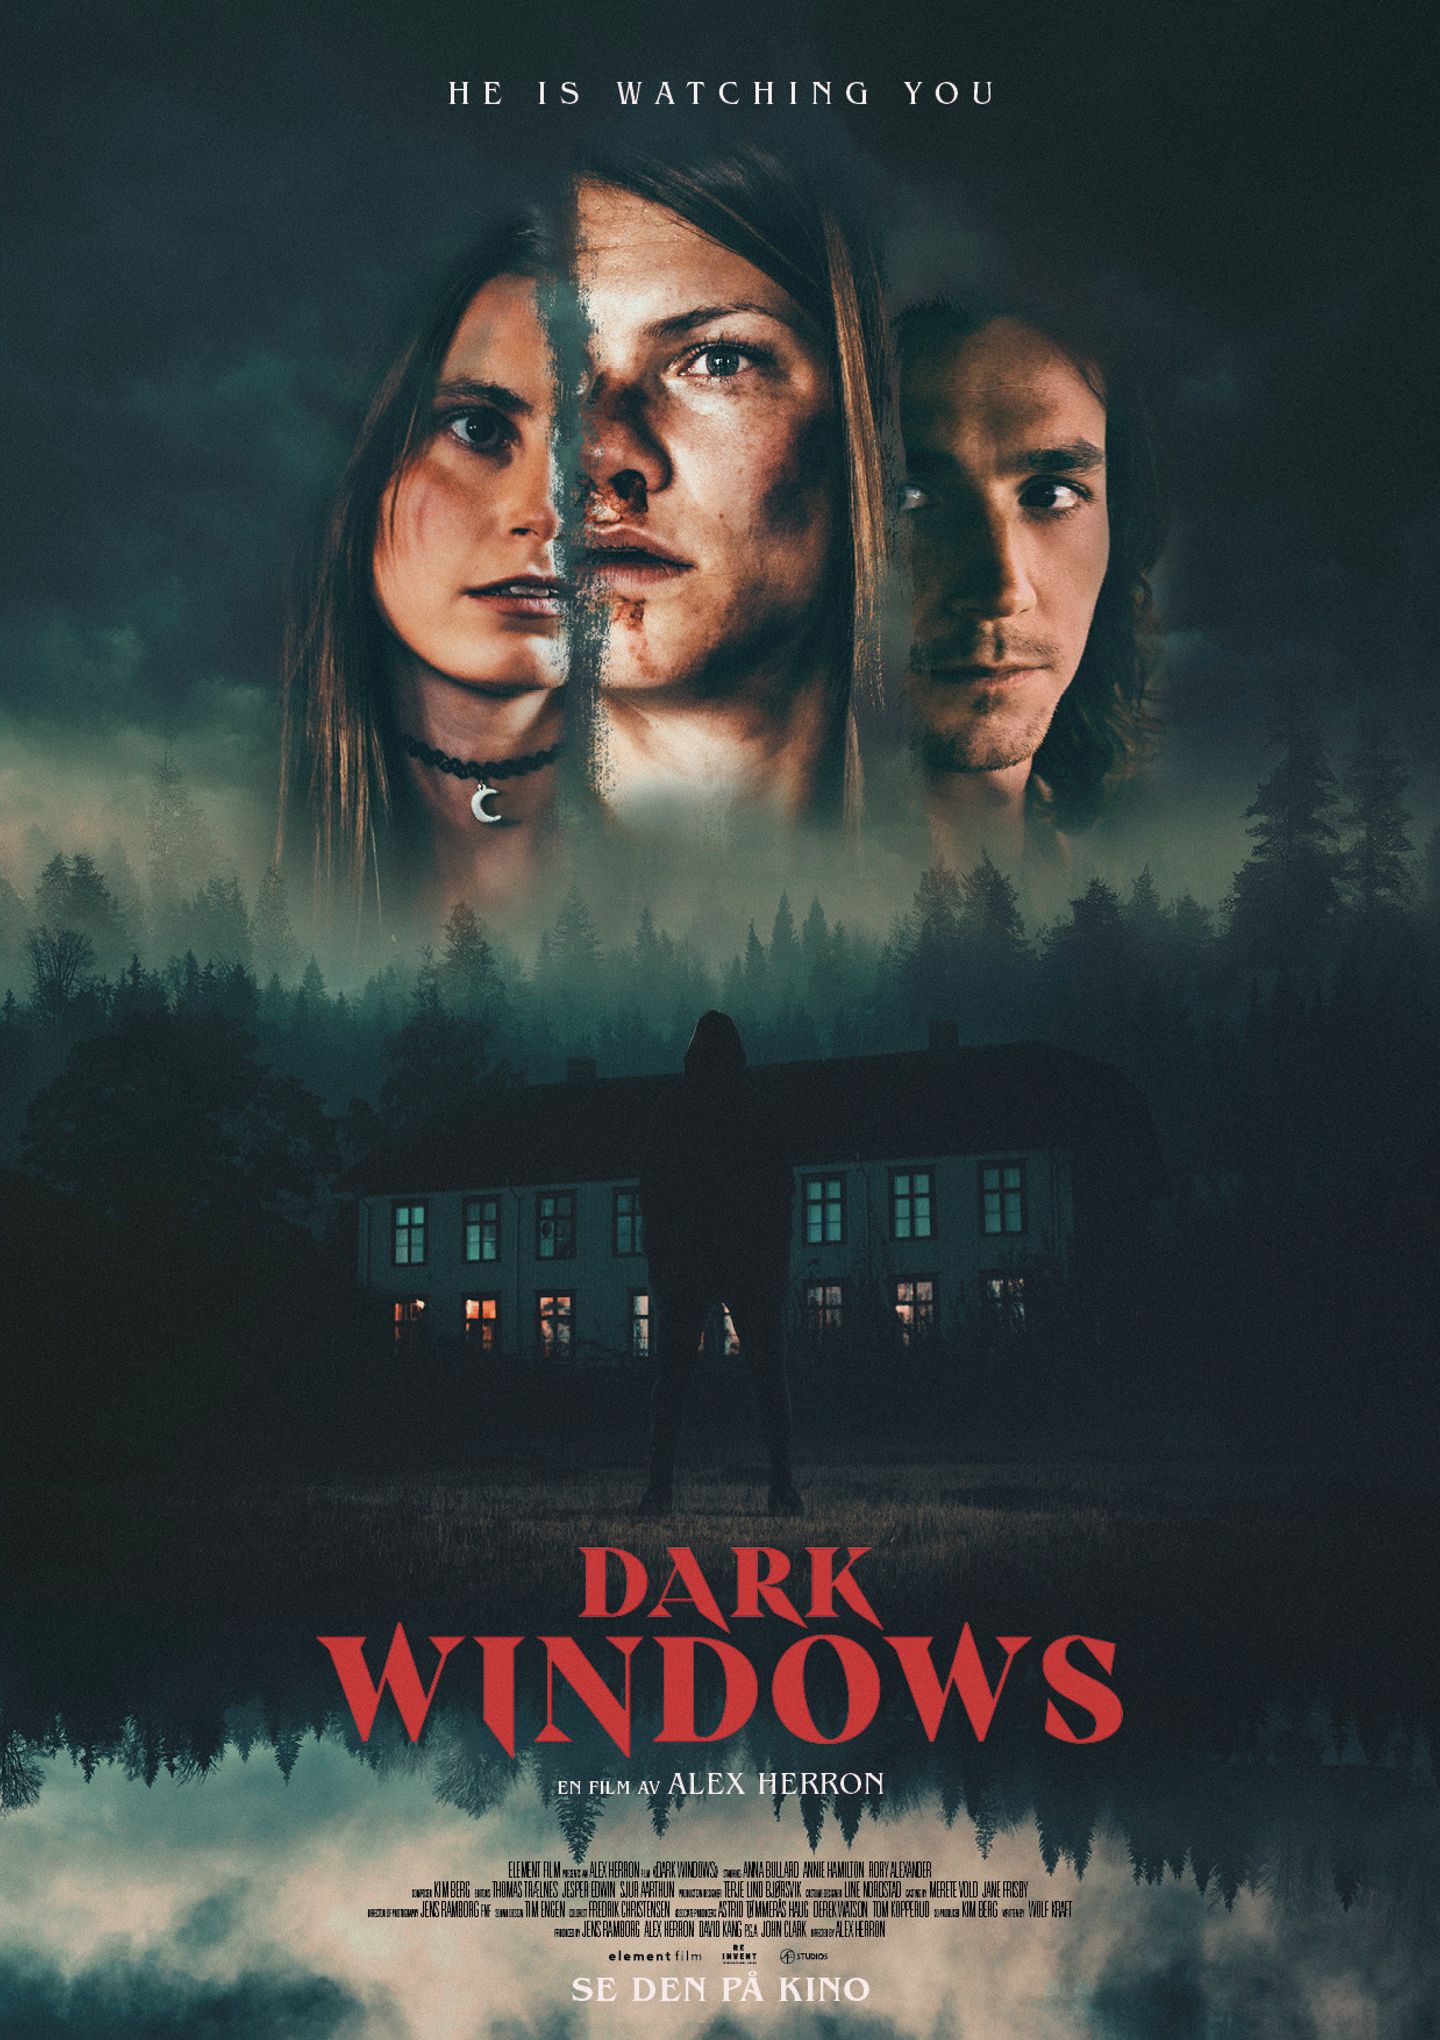 Plakat for 'Dark Windows'